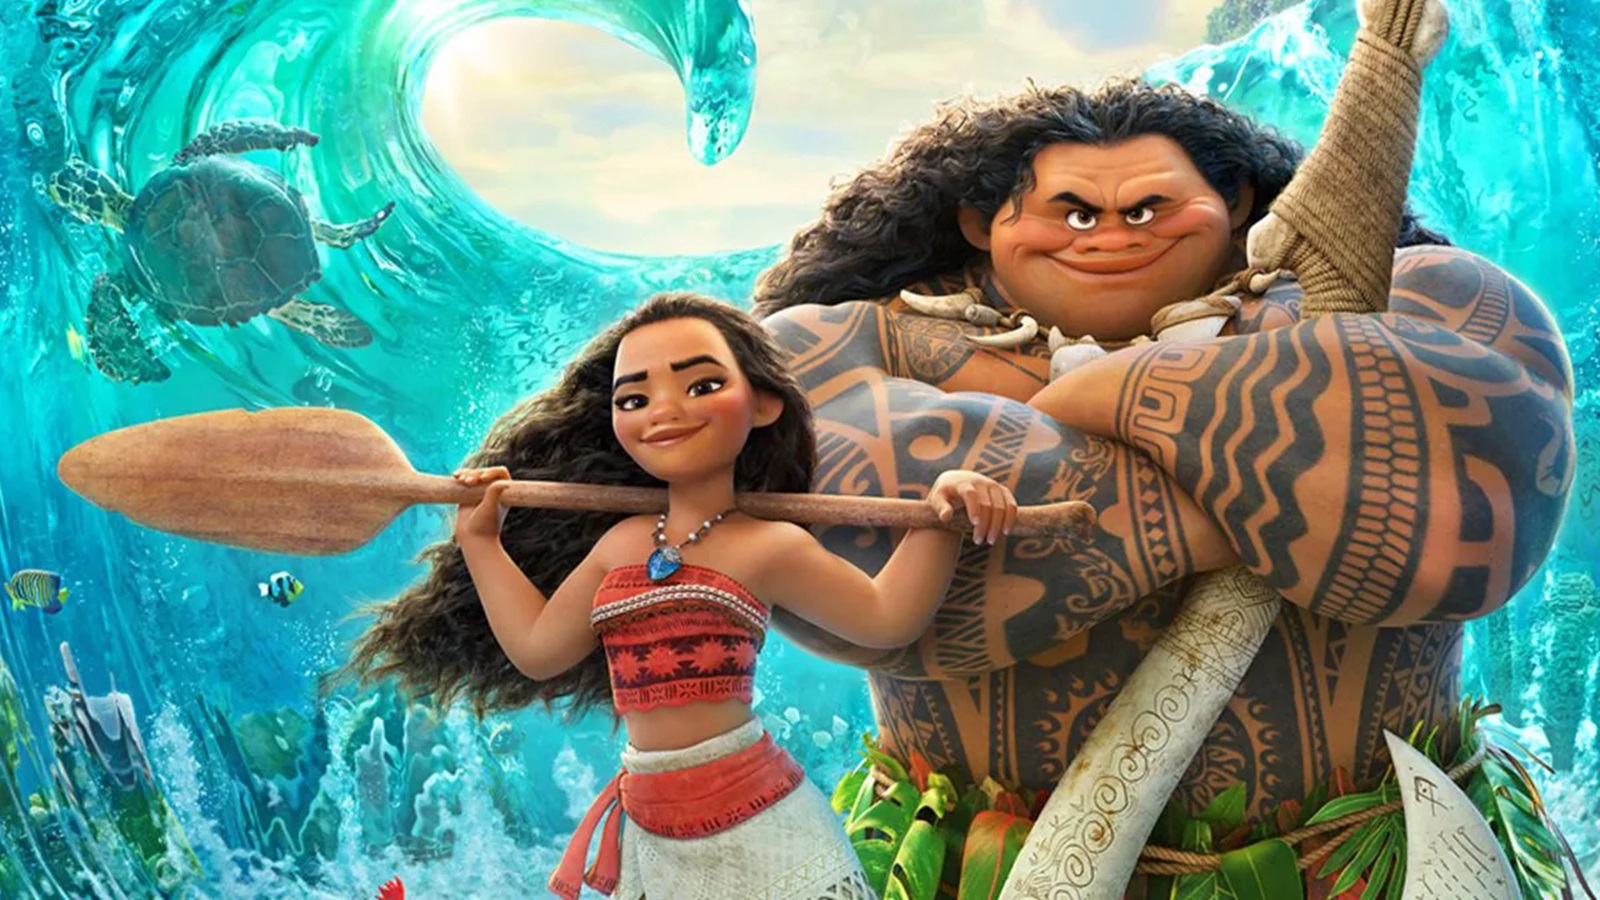 Oceania 2: a novembre arriverà il sequel del film animato, inizialmente ideato come serie tv